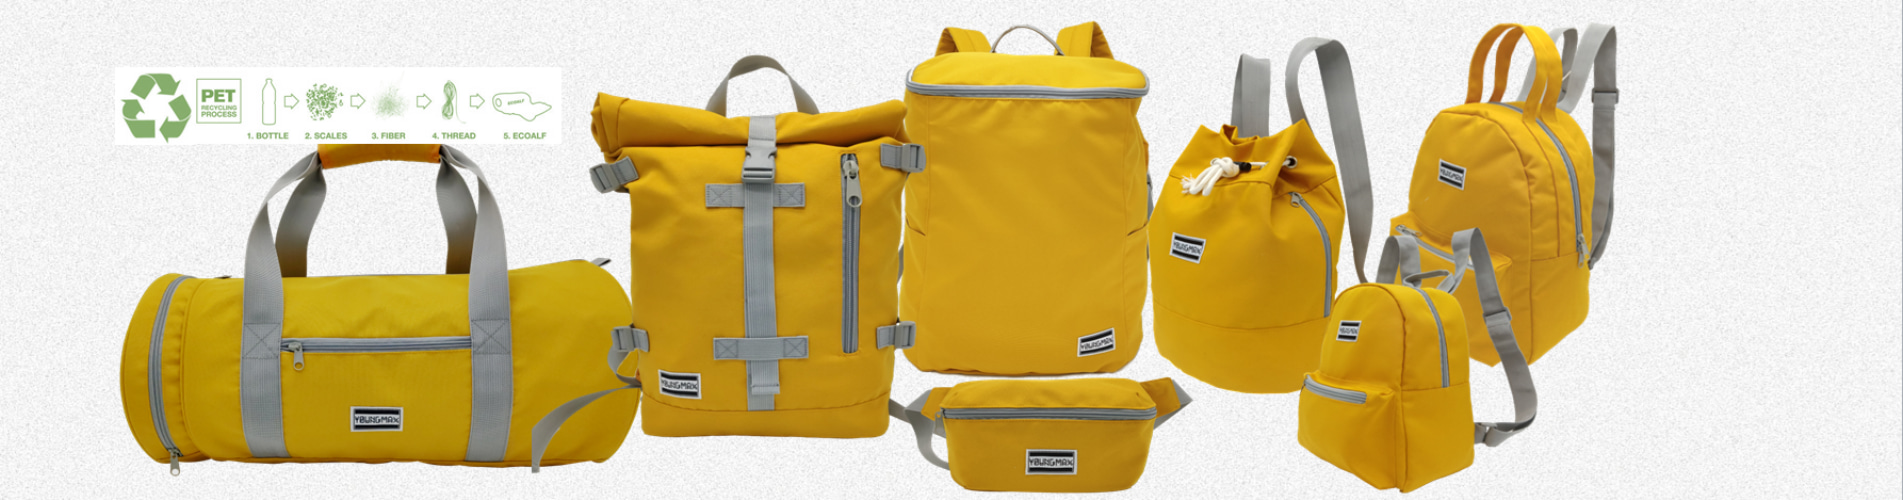 OEM bag and backpack supplier